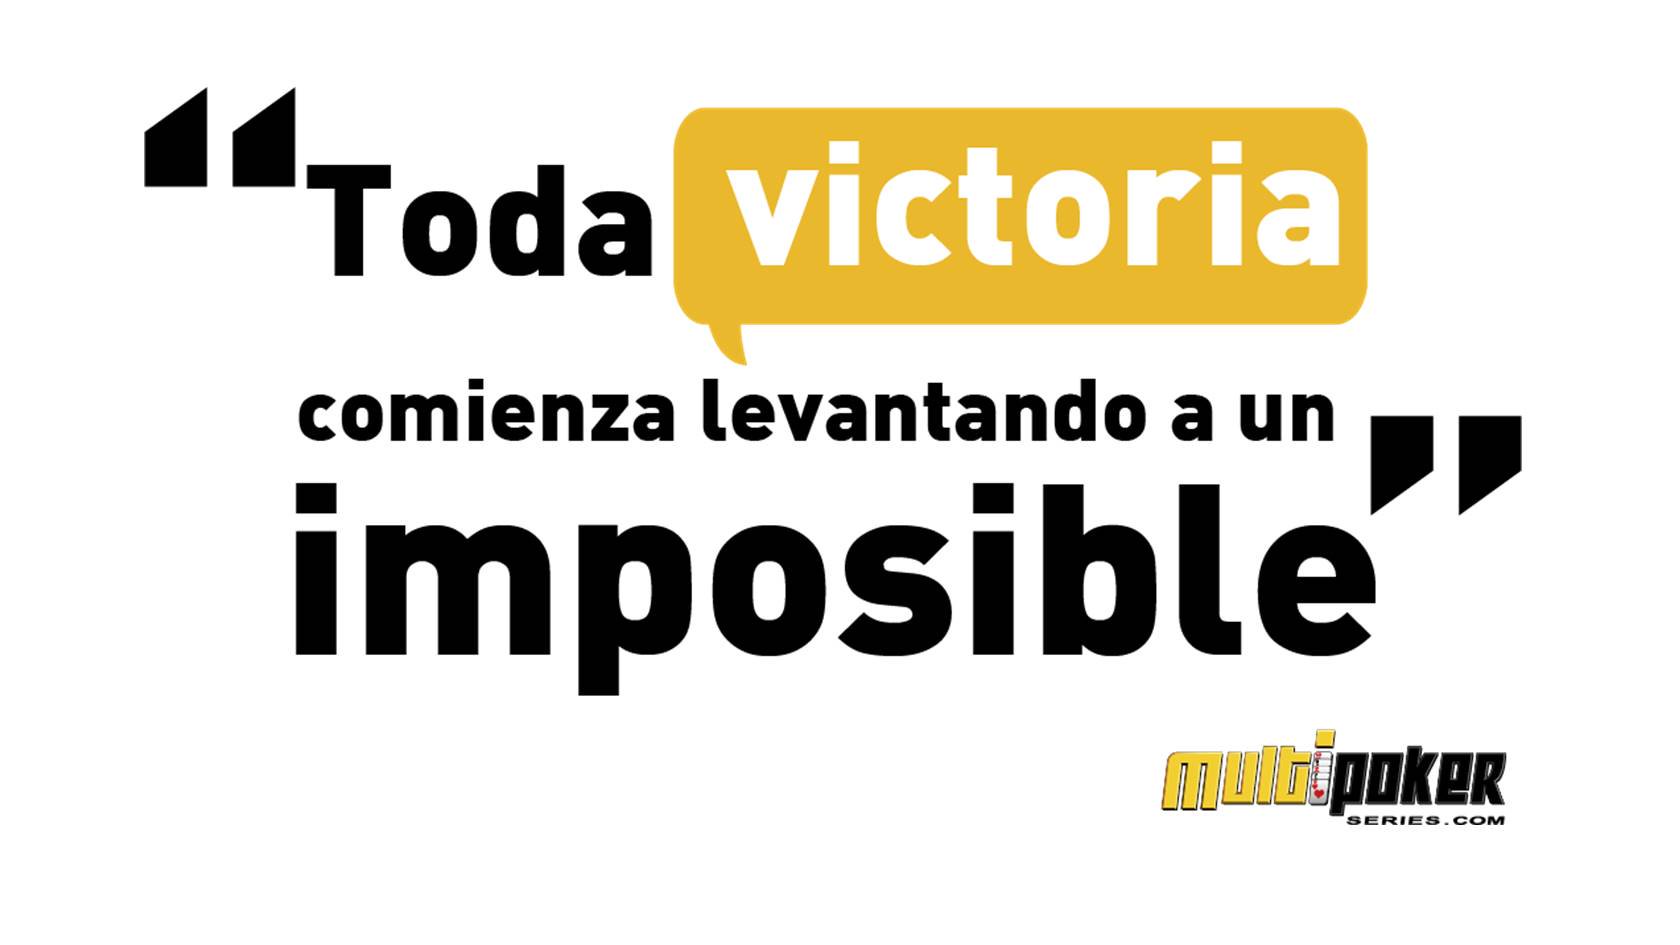 Toda victoria comienza levantando a un imposible